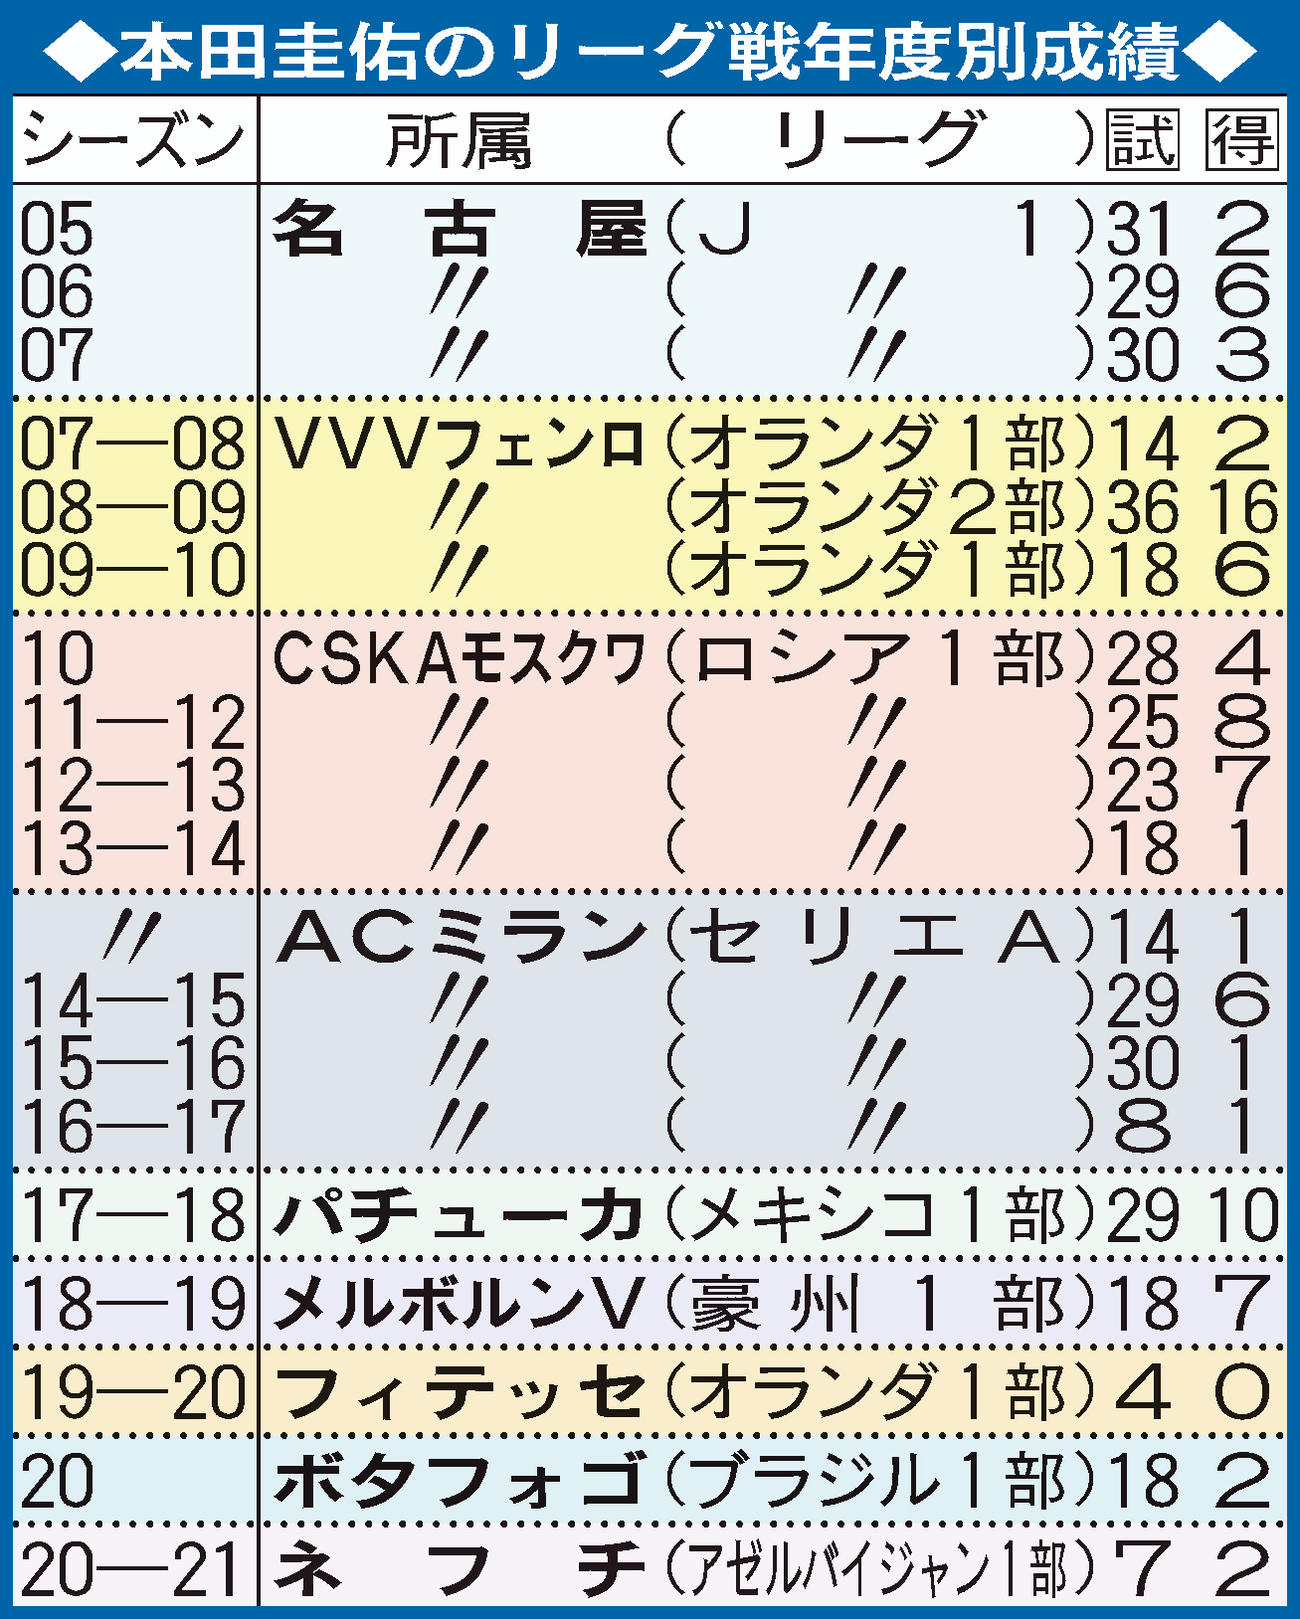 本田圭佑の年度別成績表